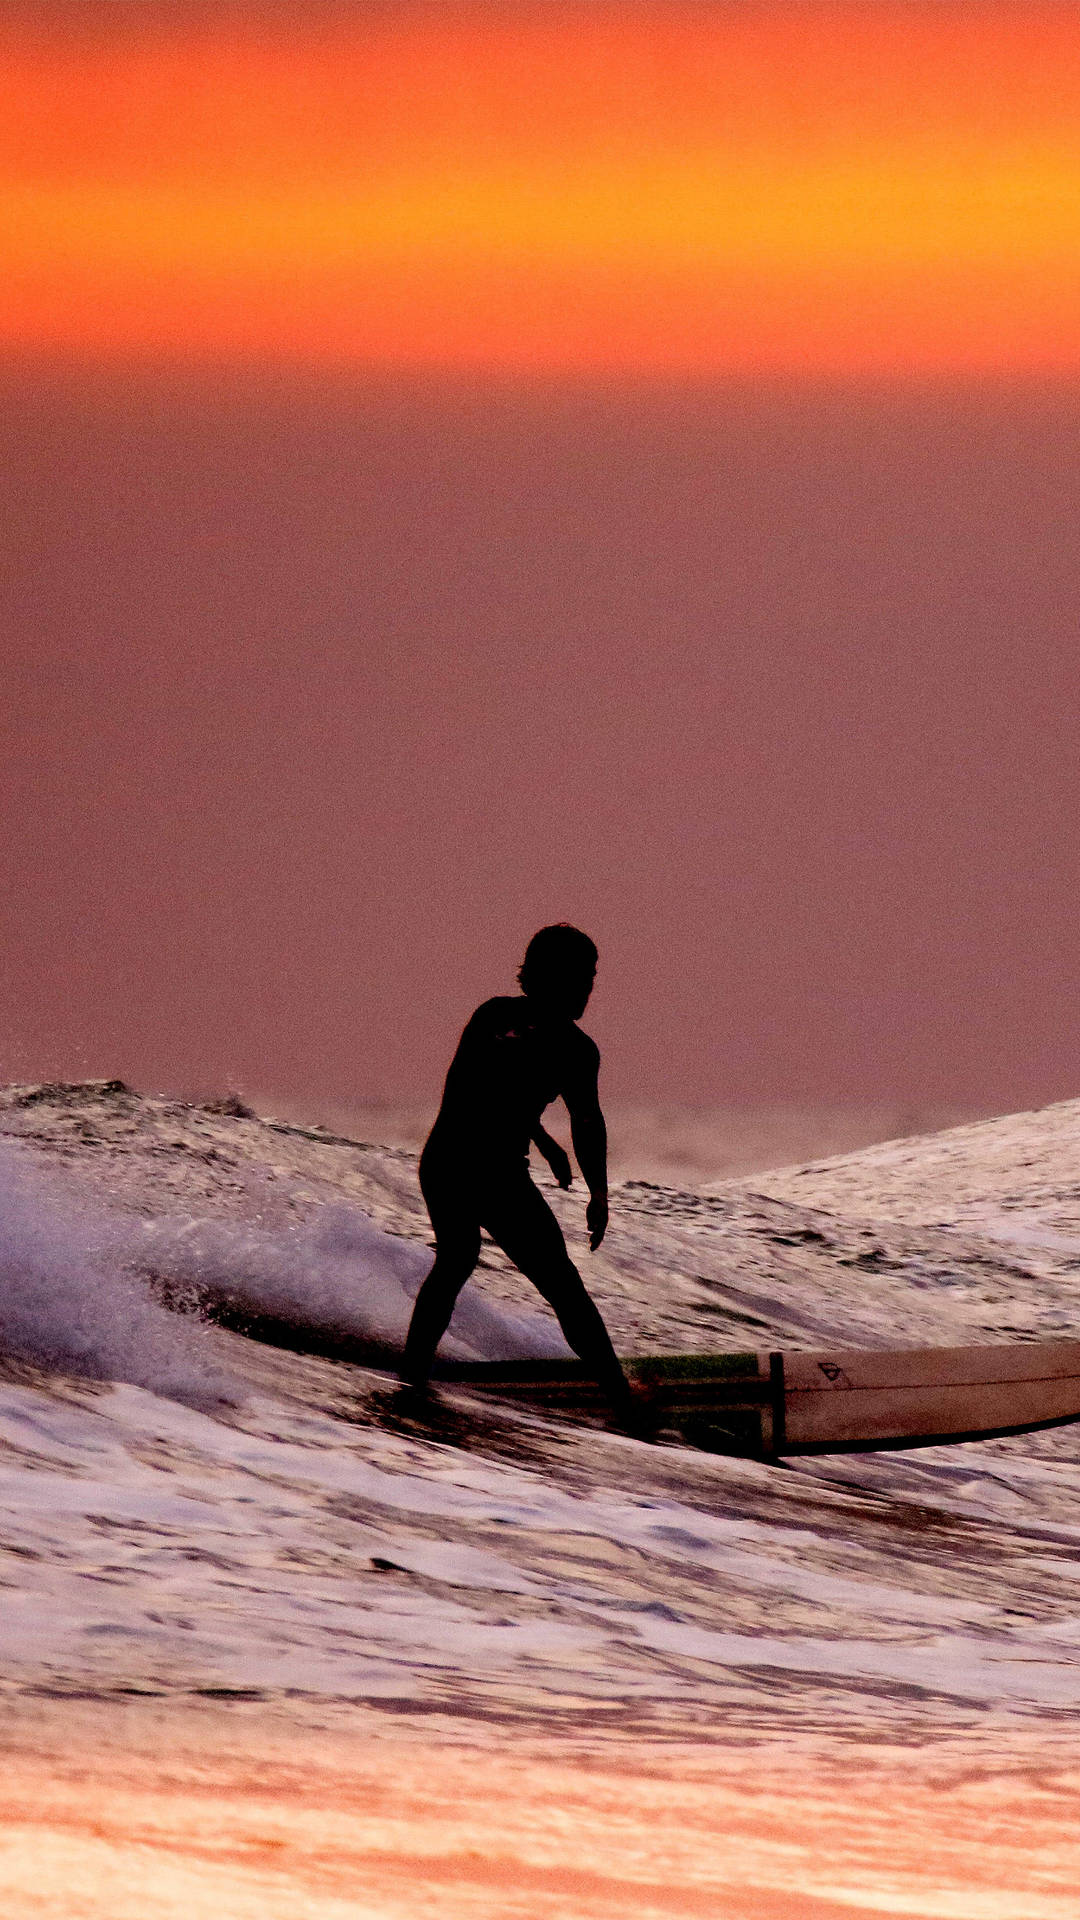 Surfing Under An Orange Sunset Sky Background